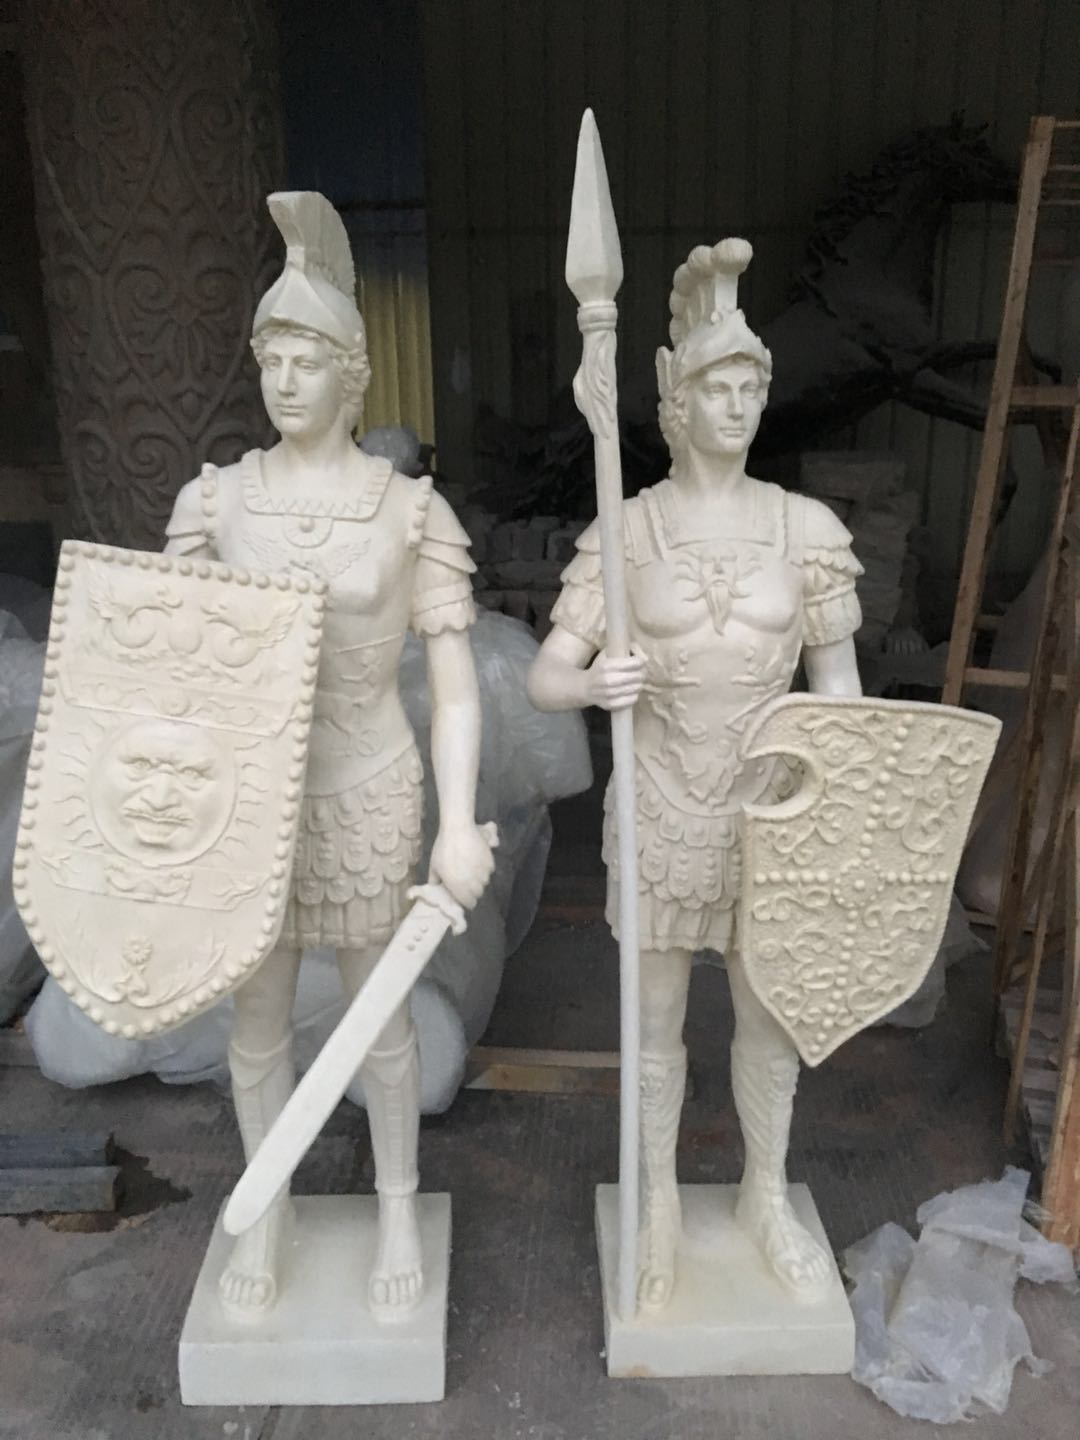 古罗马欧式武士雕塑 武士雕塑报价 武士雕塑批发 武士雕塑供应商 武士雕塑生产厂家 武士雕塑直销